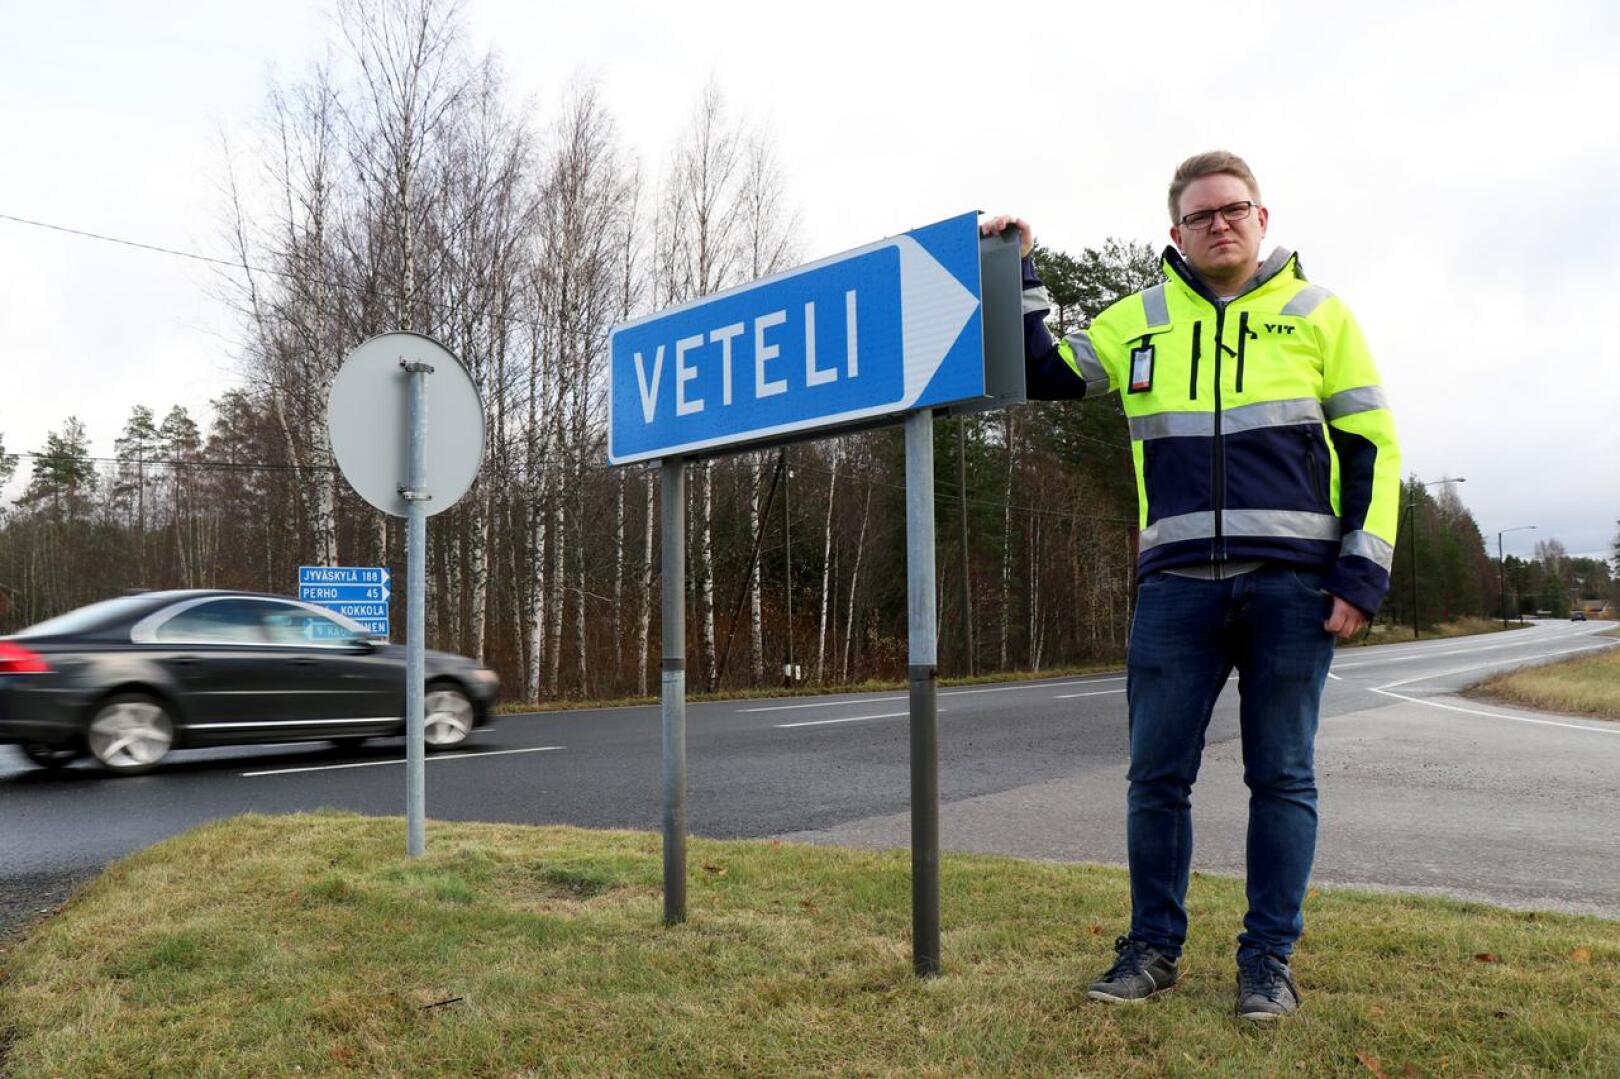 Vetelin urakka-alueen tienhoito siirtyi lokakuun alussa YIT:lle. Työmaapäällikkönä on perholainen Markku Koski, joka työskenteli aiemmin T. Pahkankangas Oy:llä.